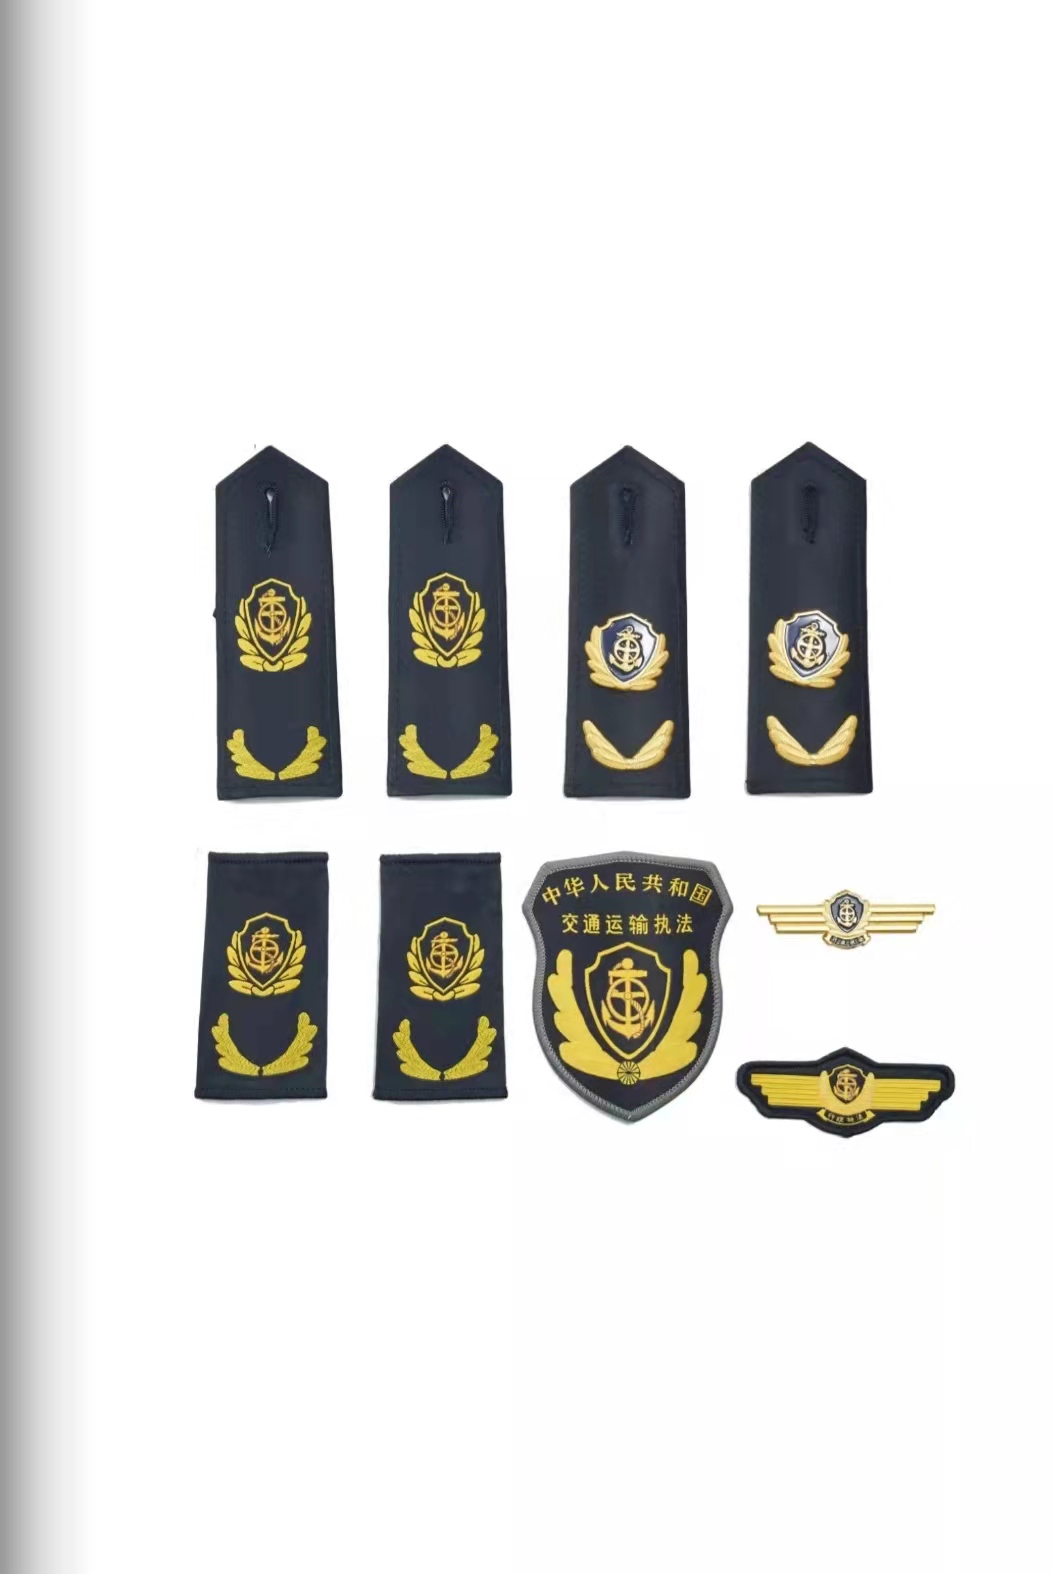 三门峡六部门统一交通运输执法服装标志